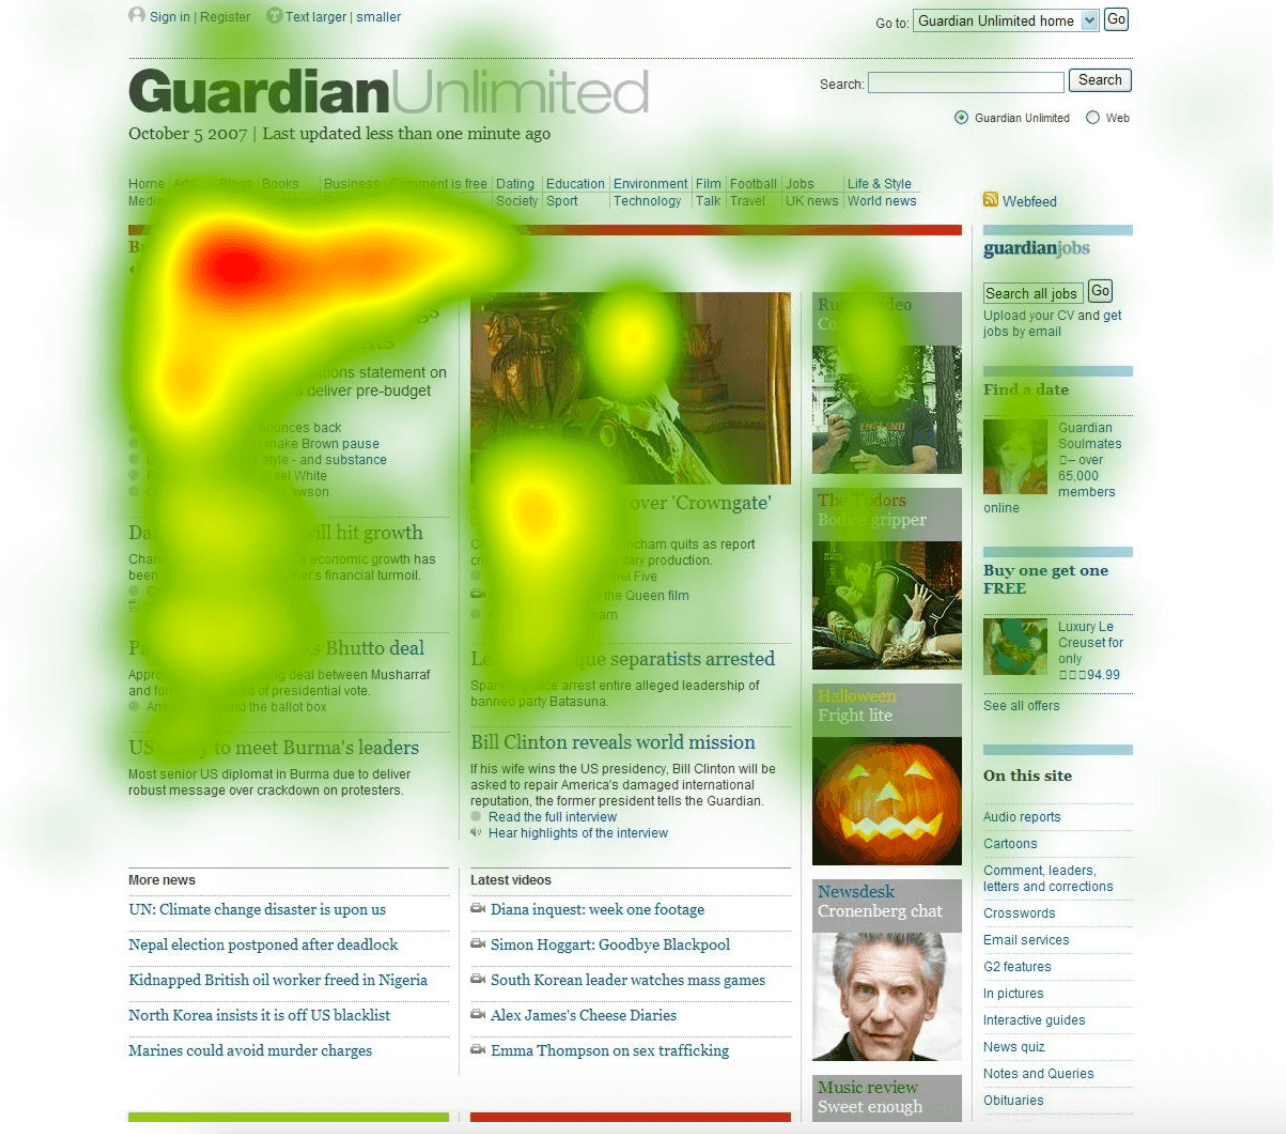 來自 Guardian 的熱圖截圖顯示了文章開頭附近的大部分活動